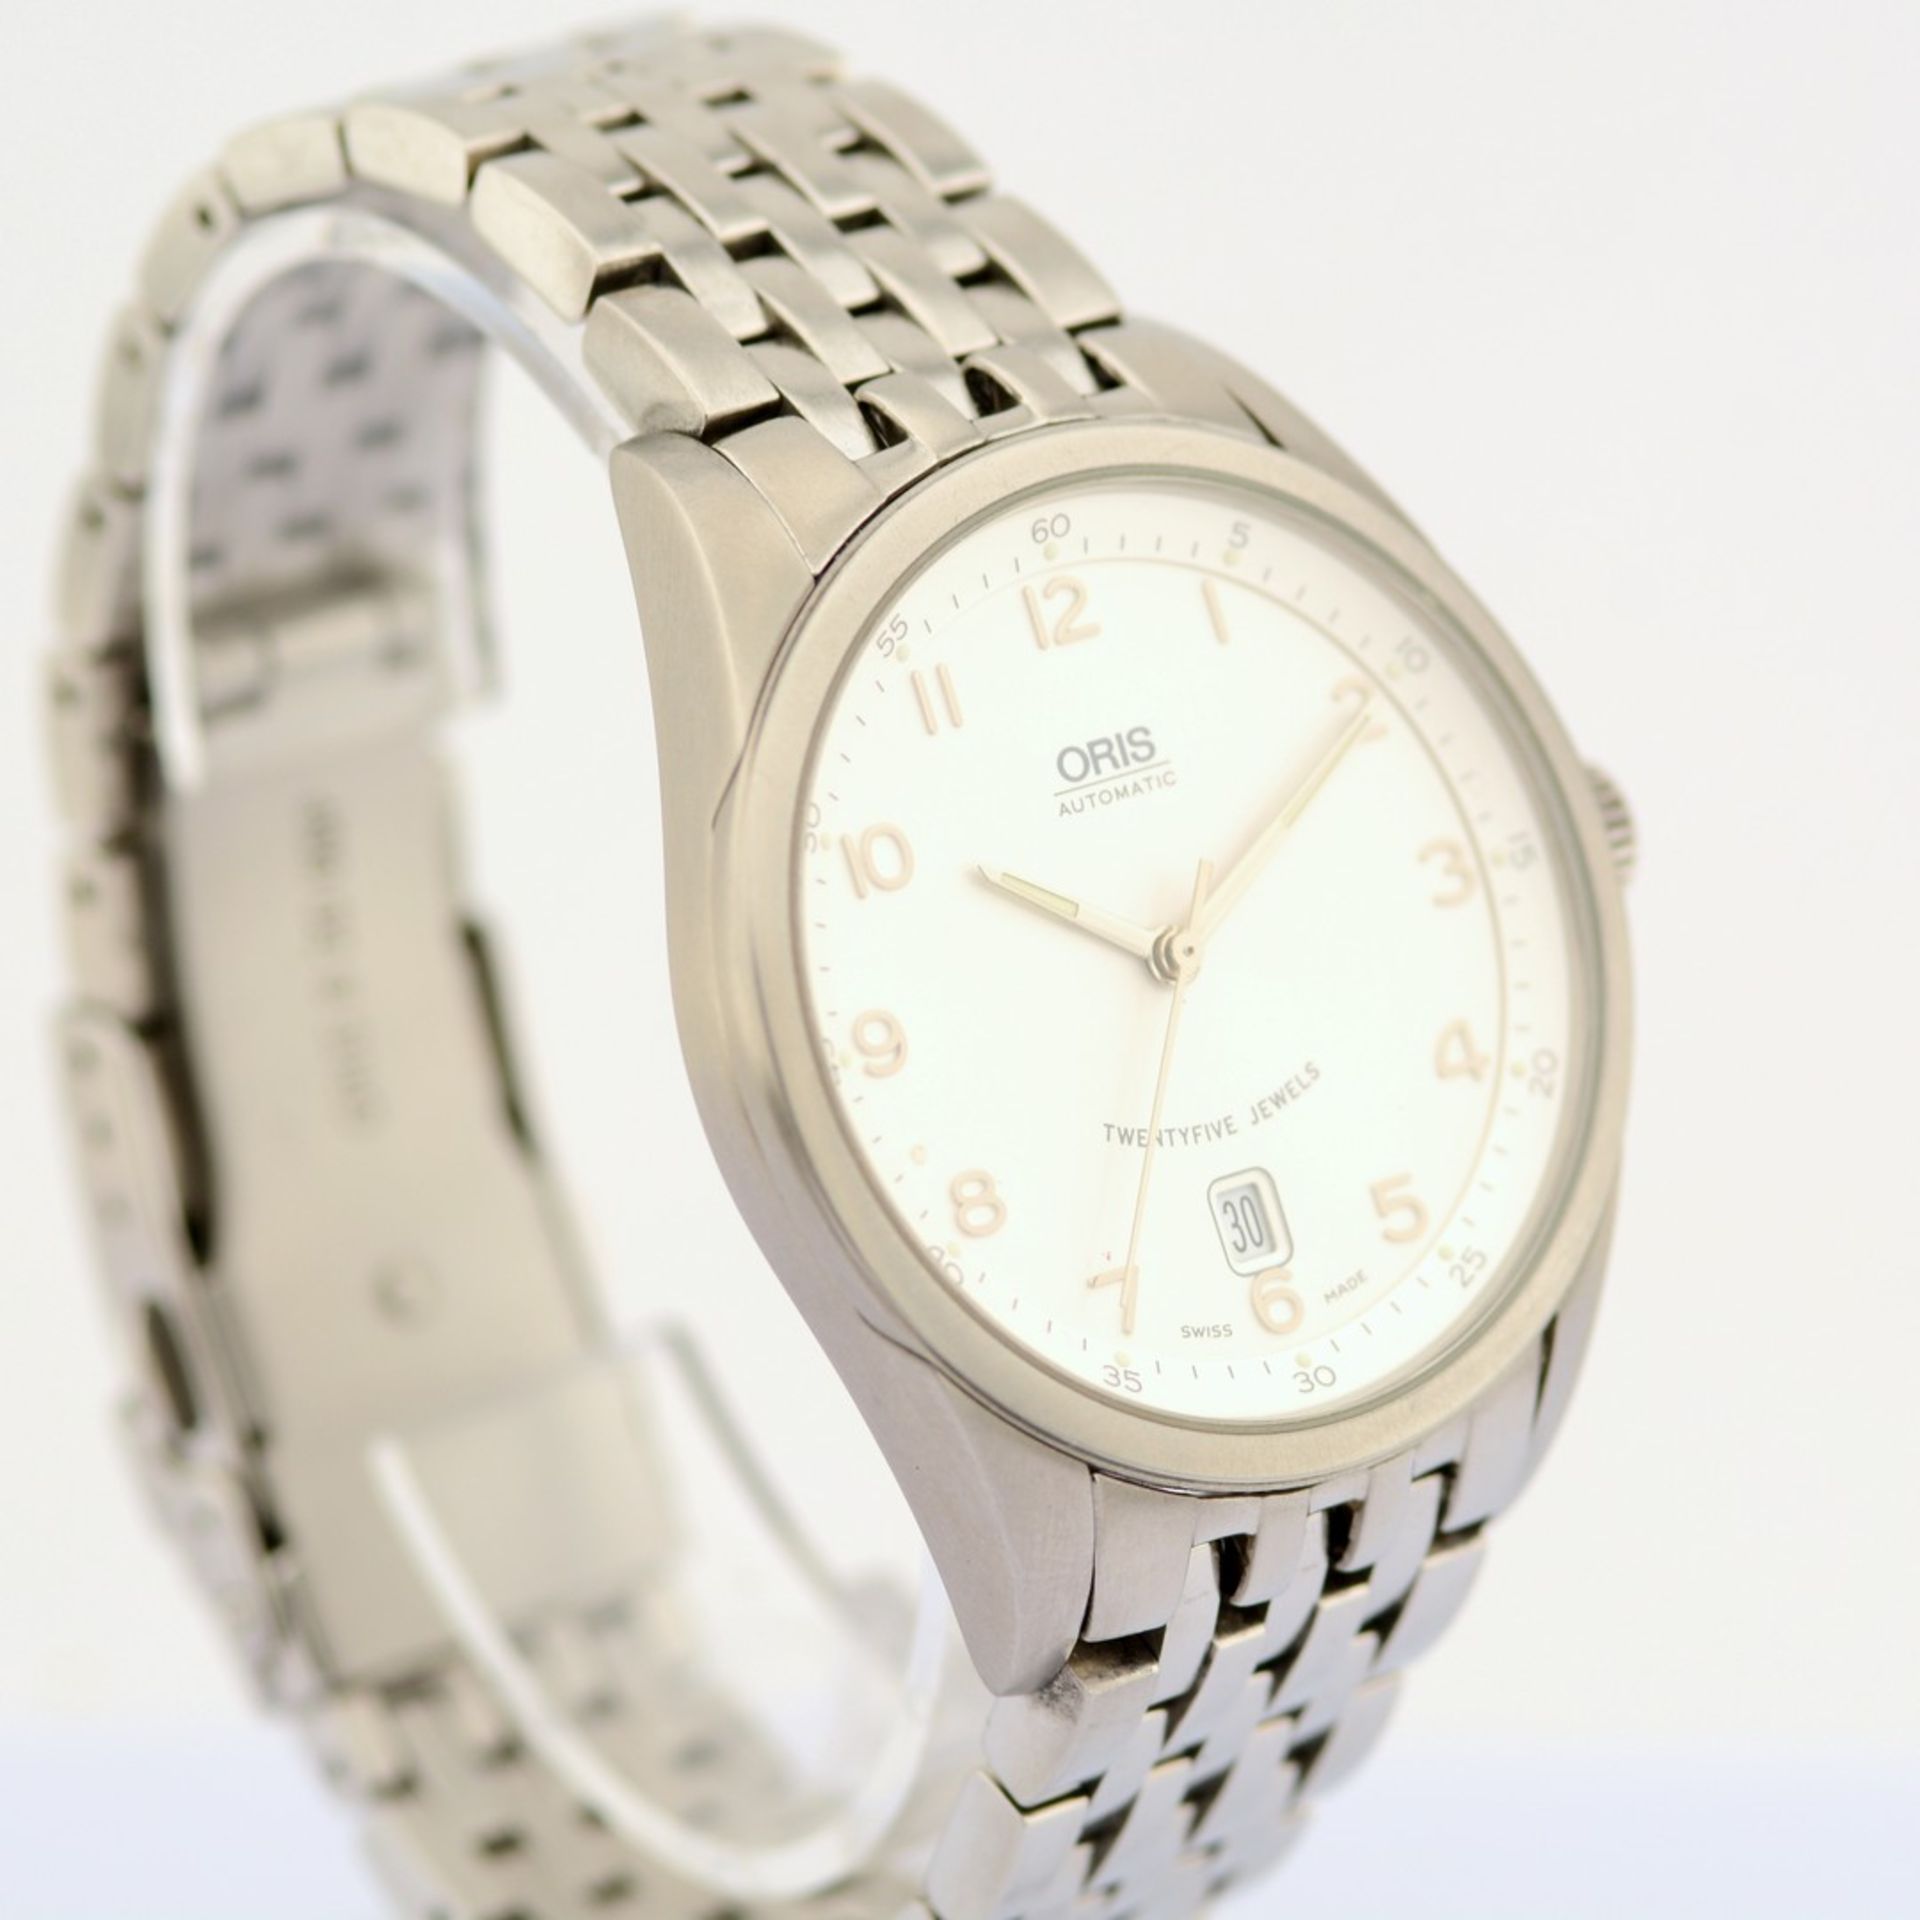 Oris / Classic Date XXL 7504 - Gentlemen's Steel Wristwatch - Image 4 of 7